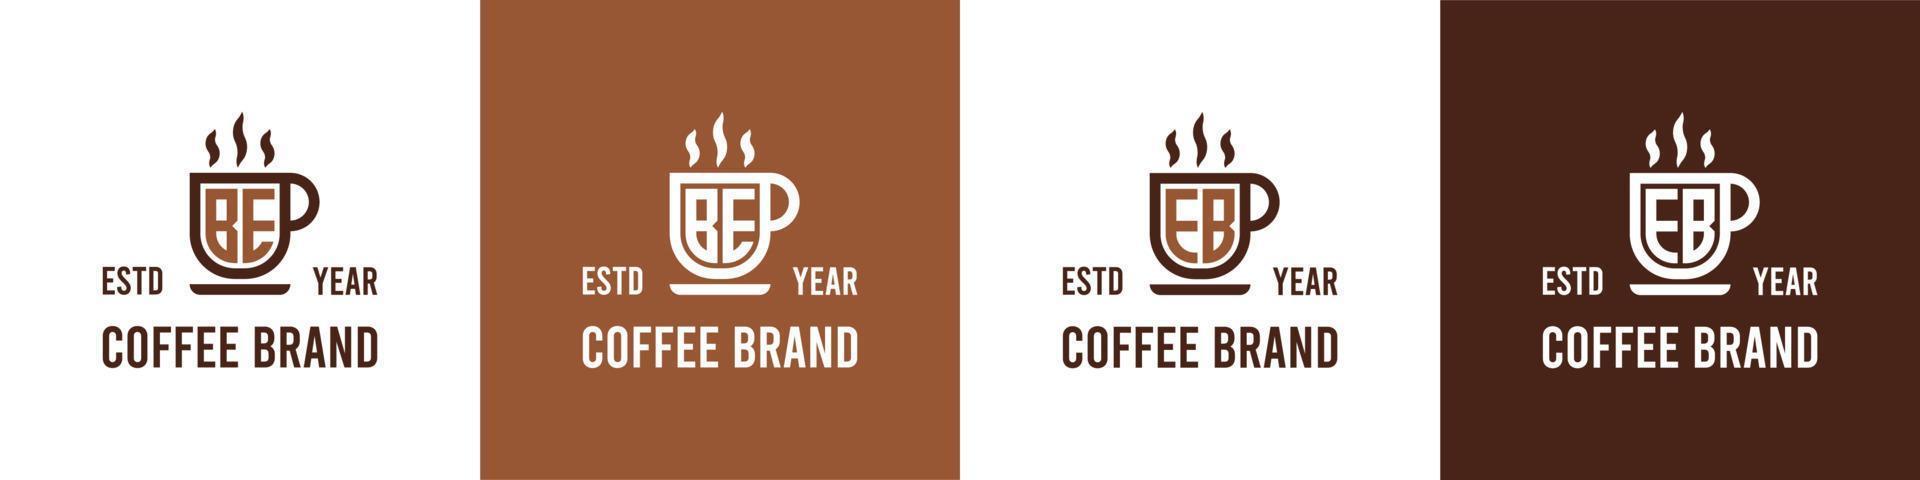 carta estar e eb café logotipo, adequado para qualquer o negócio relacionado para café, chá, ou de outros com estar ou eb iniciais. vetor